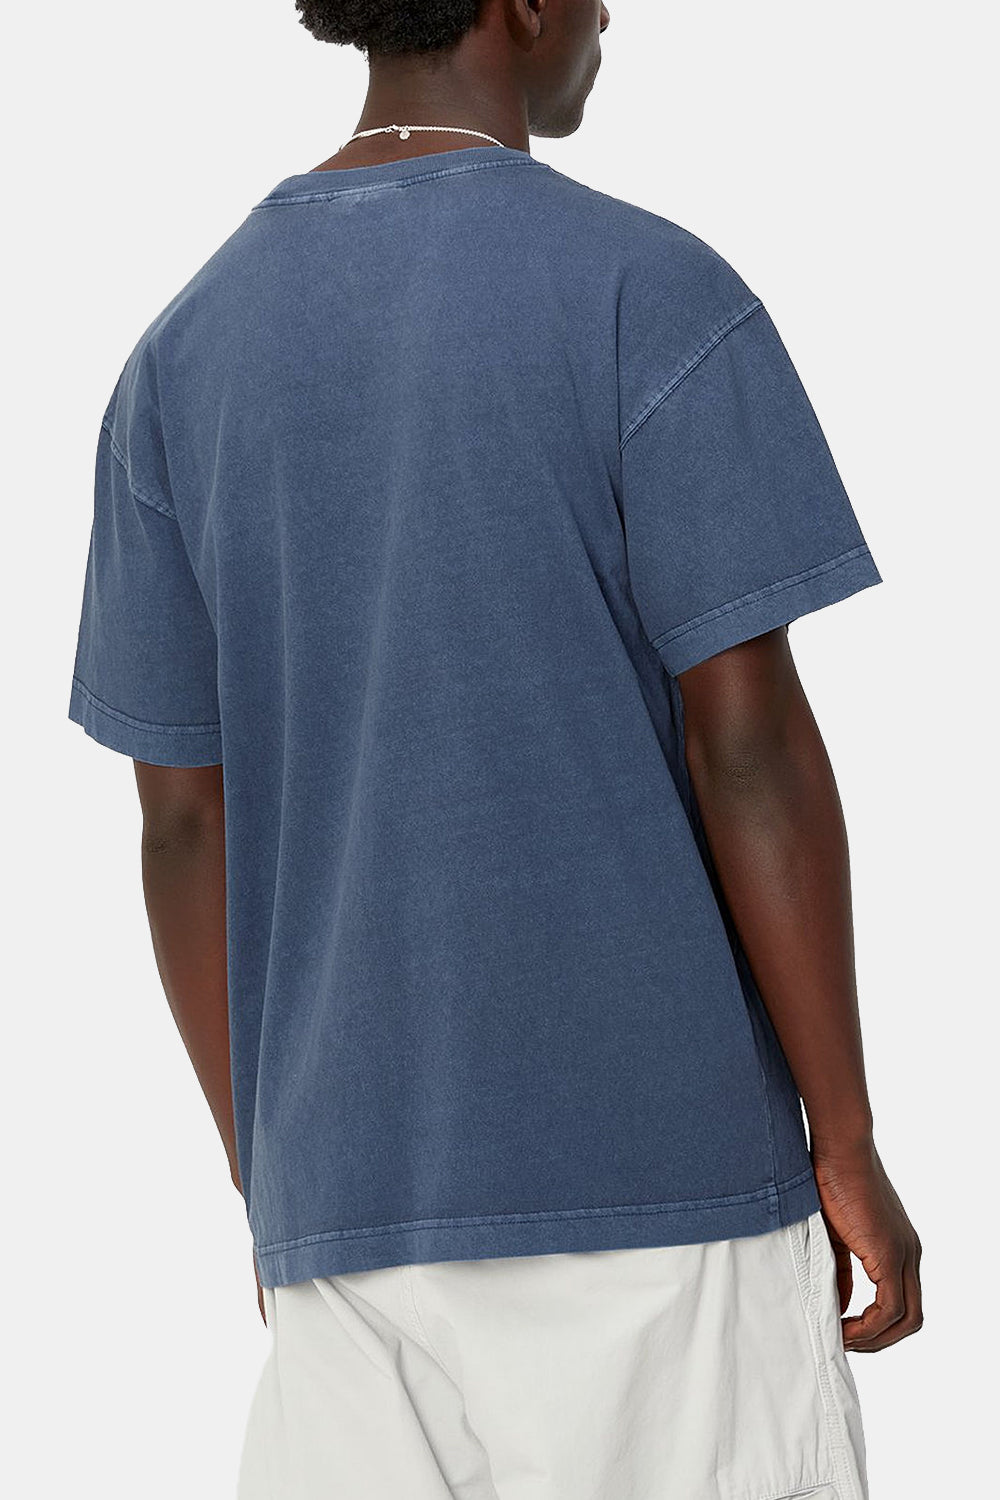 Carhartt WIP kortærmet Nelson T-shirt (ældre)